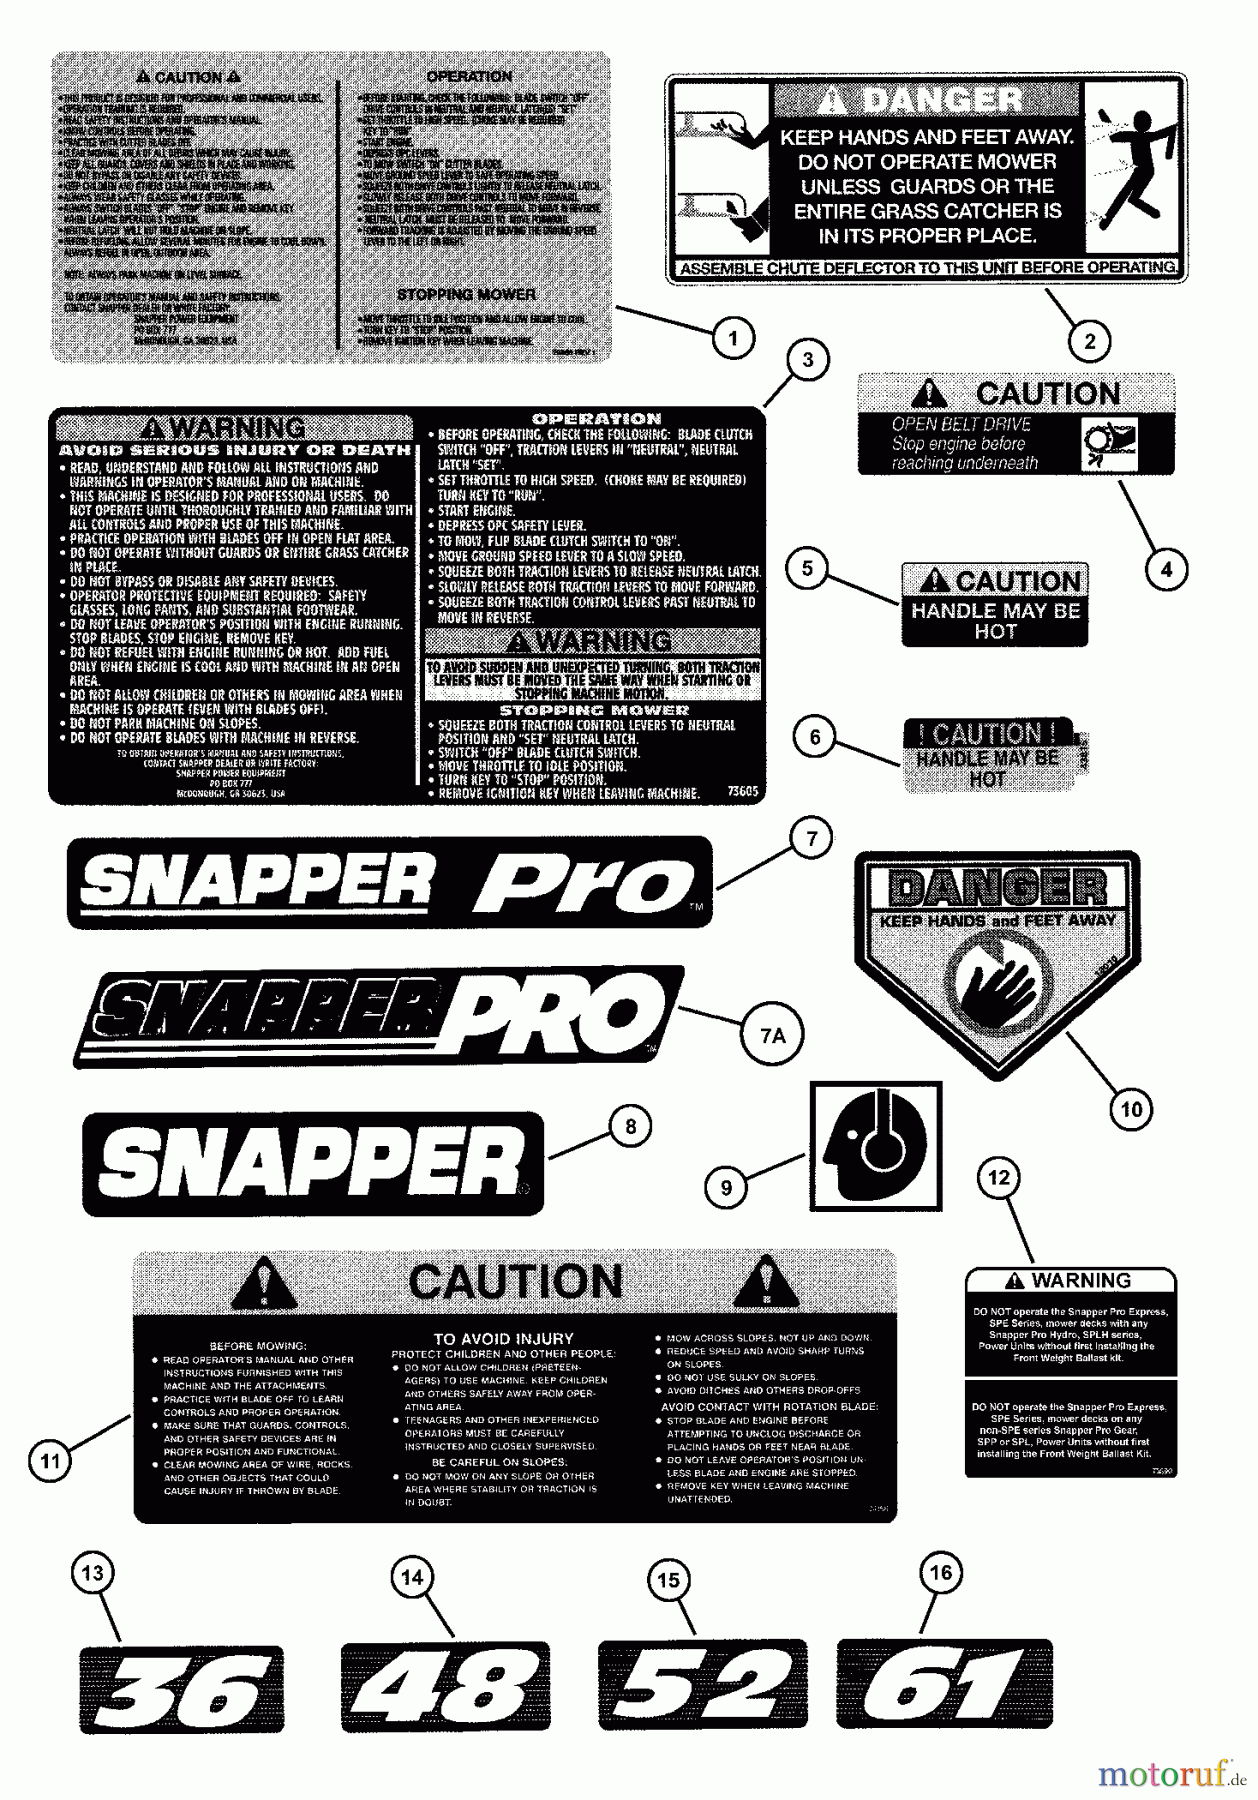  Snapper Mähdecks SPA480 - Snapper 48